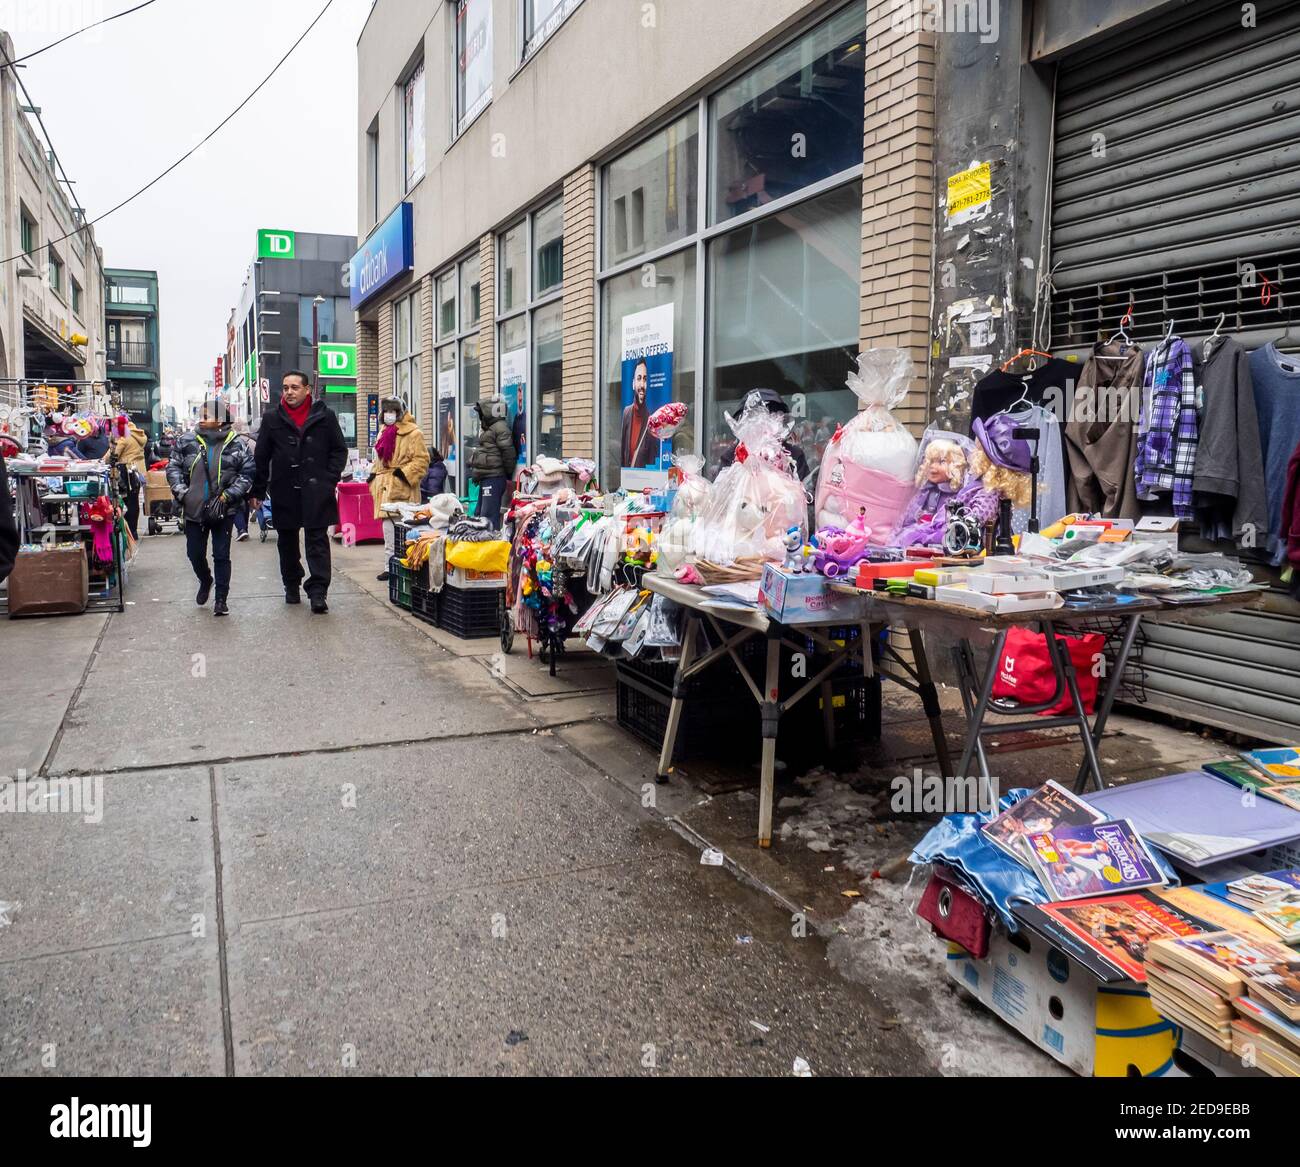 Brooklyn NY, EE.UU. - 14 de febrero de 2021: Vendedores ambulantes, algunos de ellos ilegales, adelantando las calles de Bensonhurst tratando de sobrevivir durante el tiempo pandémico. Foto de stock